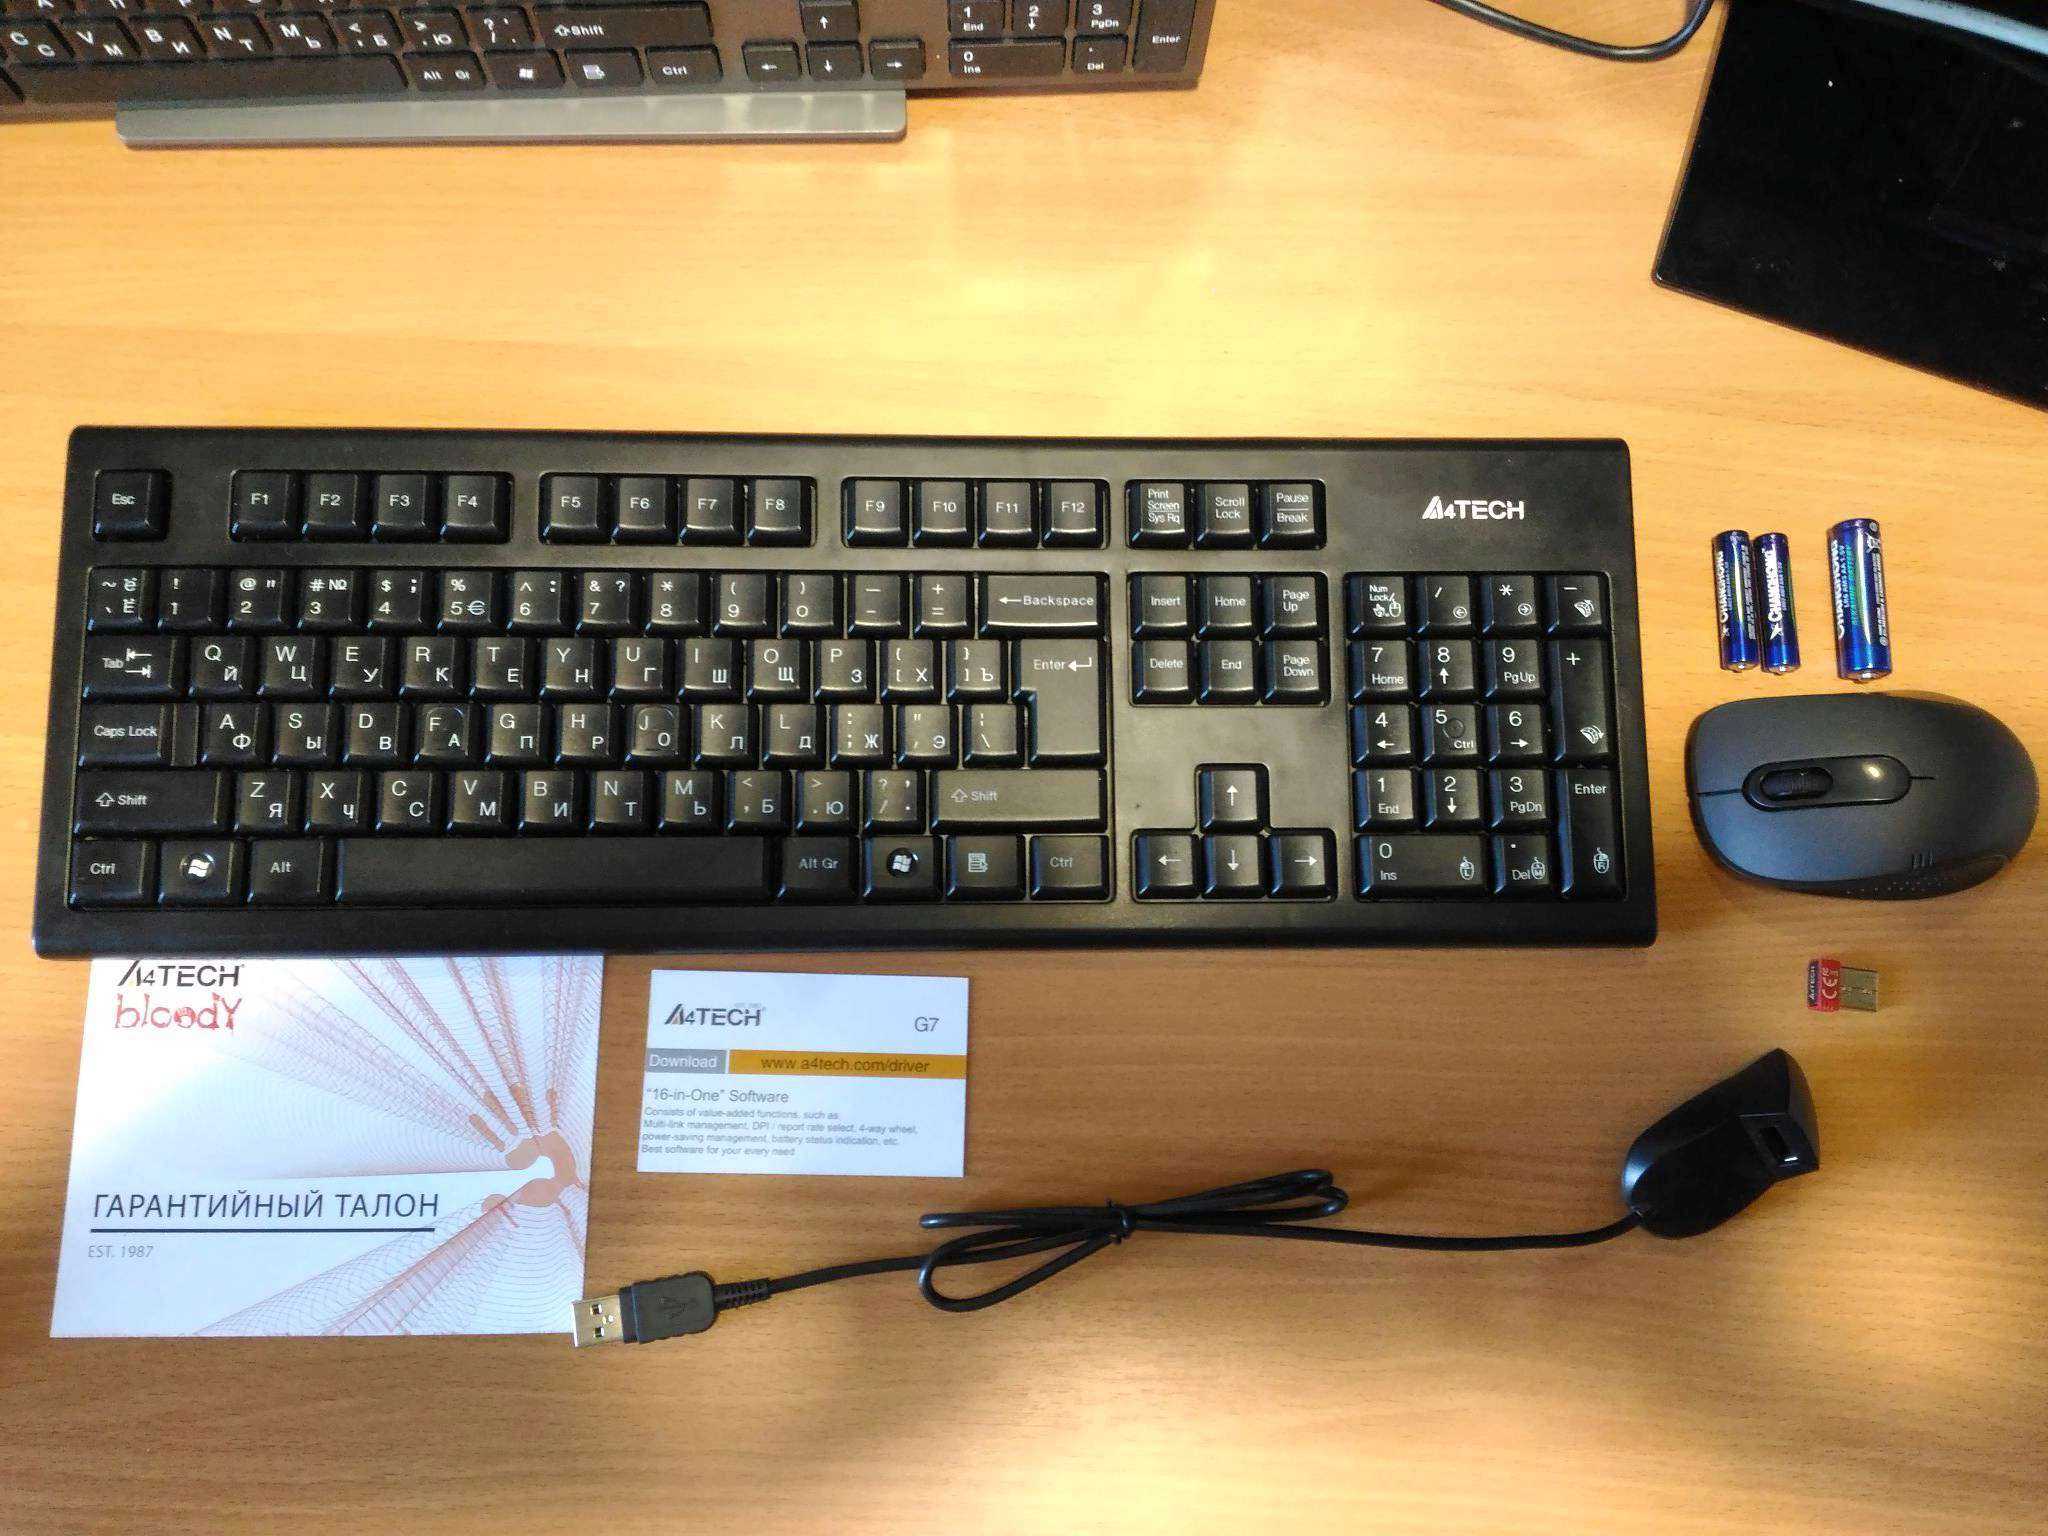 Комплект клавиатура+мышь a4tech 7100n usb купить за 1390 руб в екатеринбурге, отзывы, видео обзоры и характеристики